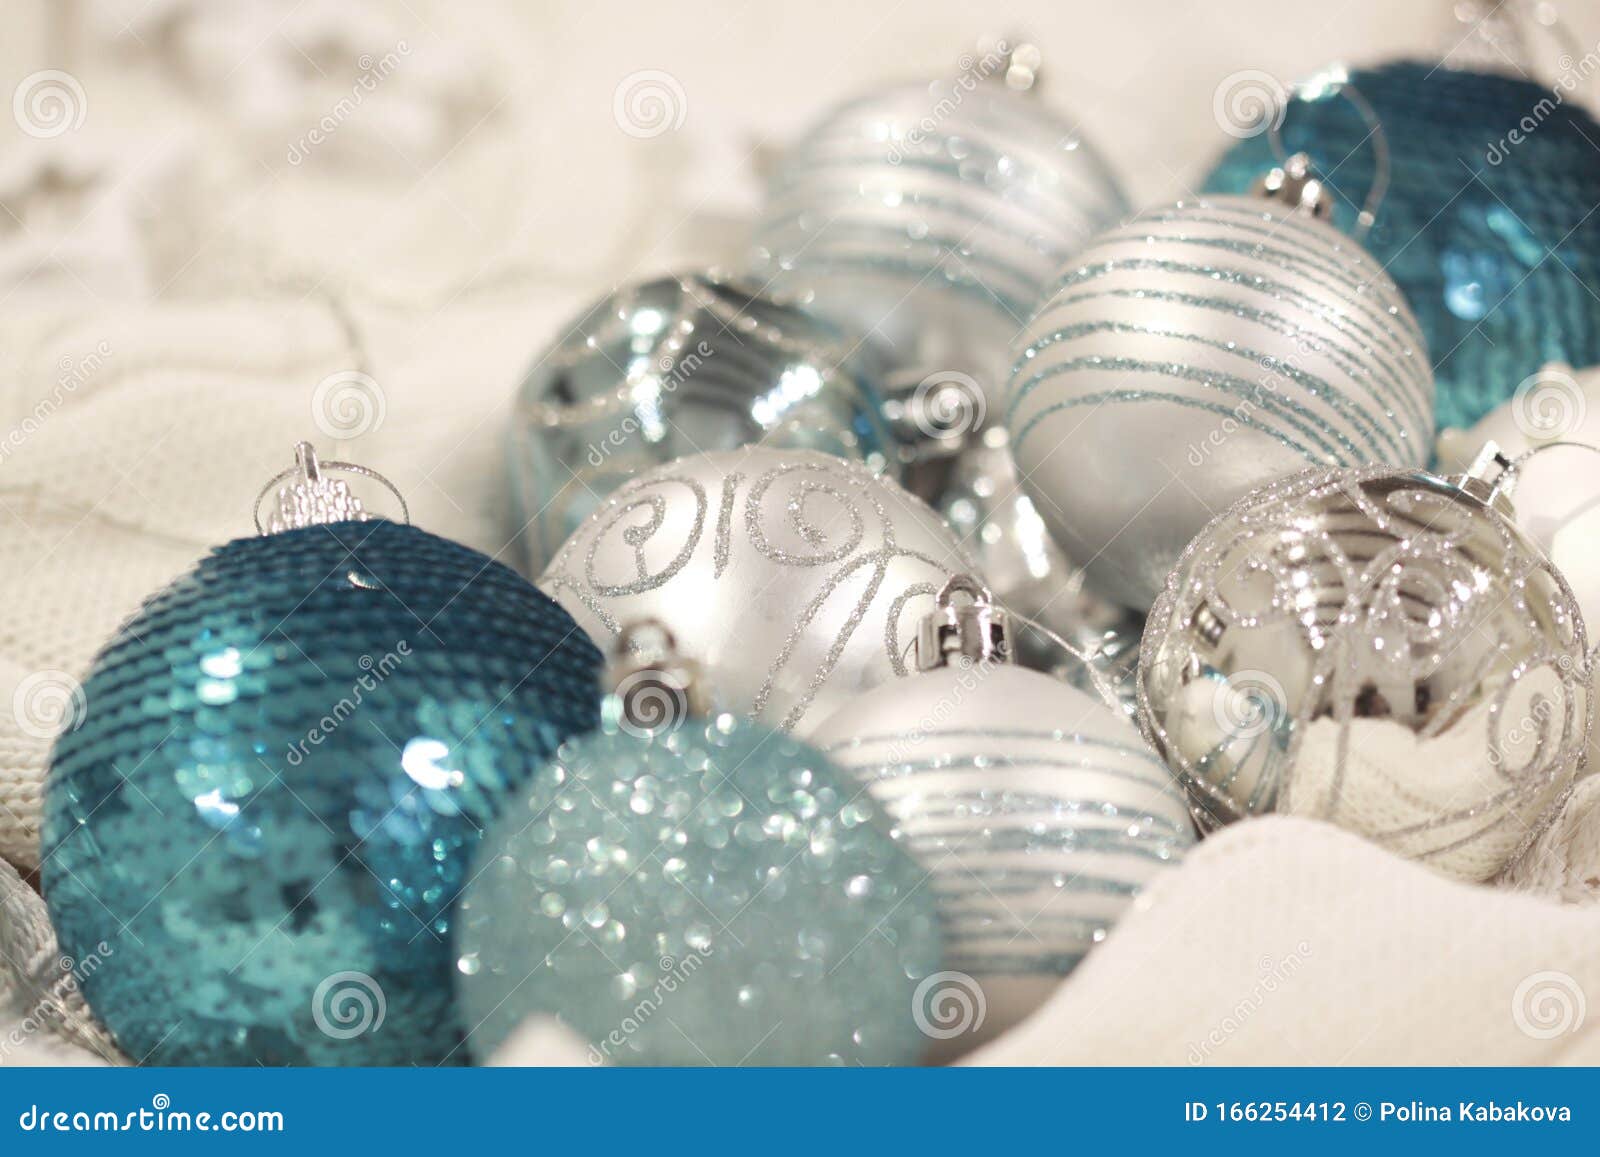 garra Feudal Podrido Decoración Turquesa De Navidad Foto de archivo - Imagen de azul, plata:  166254412